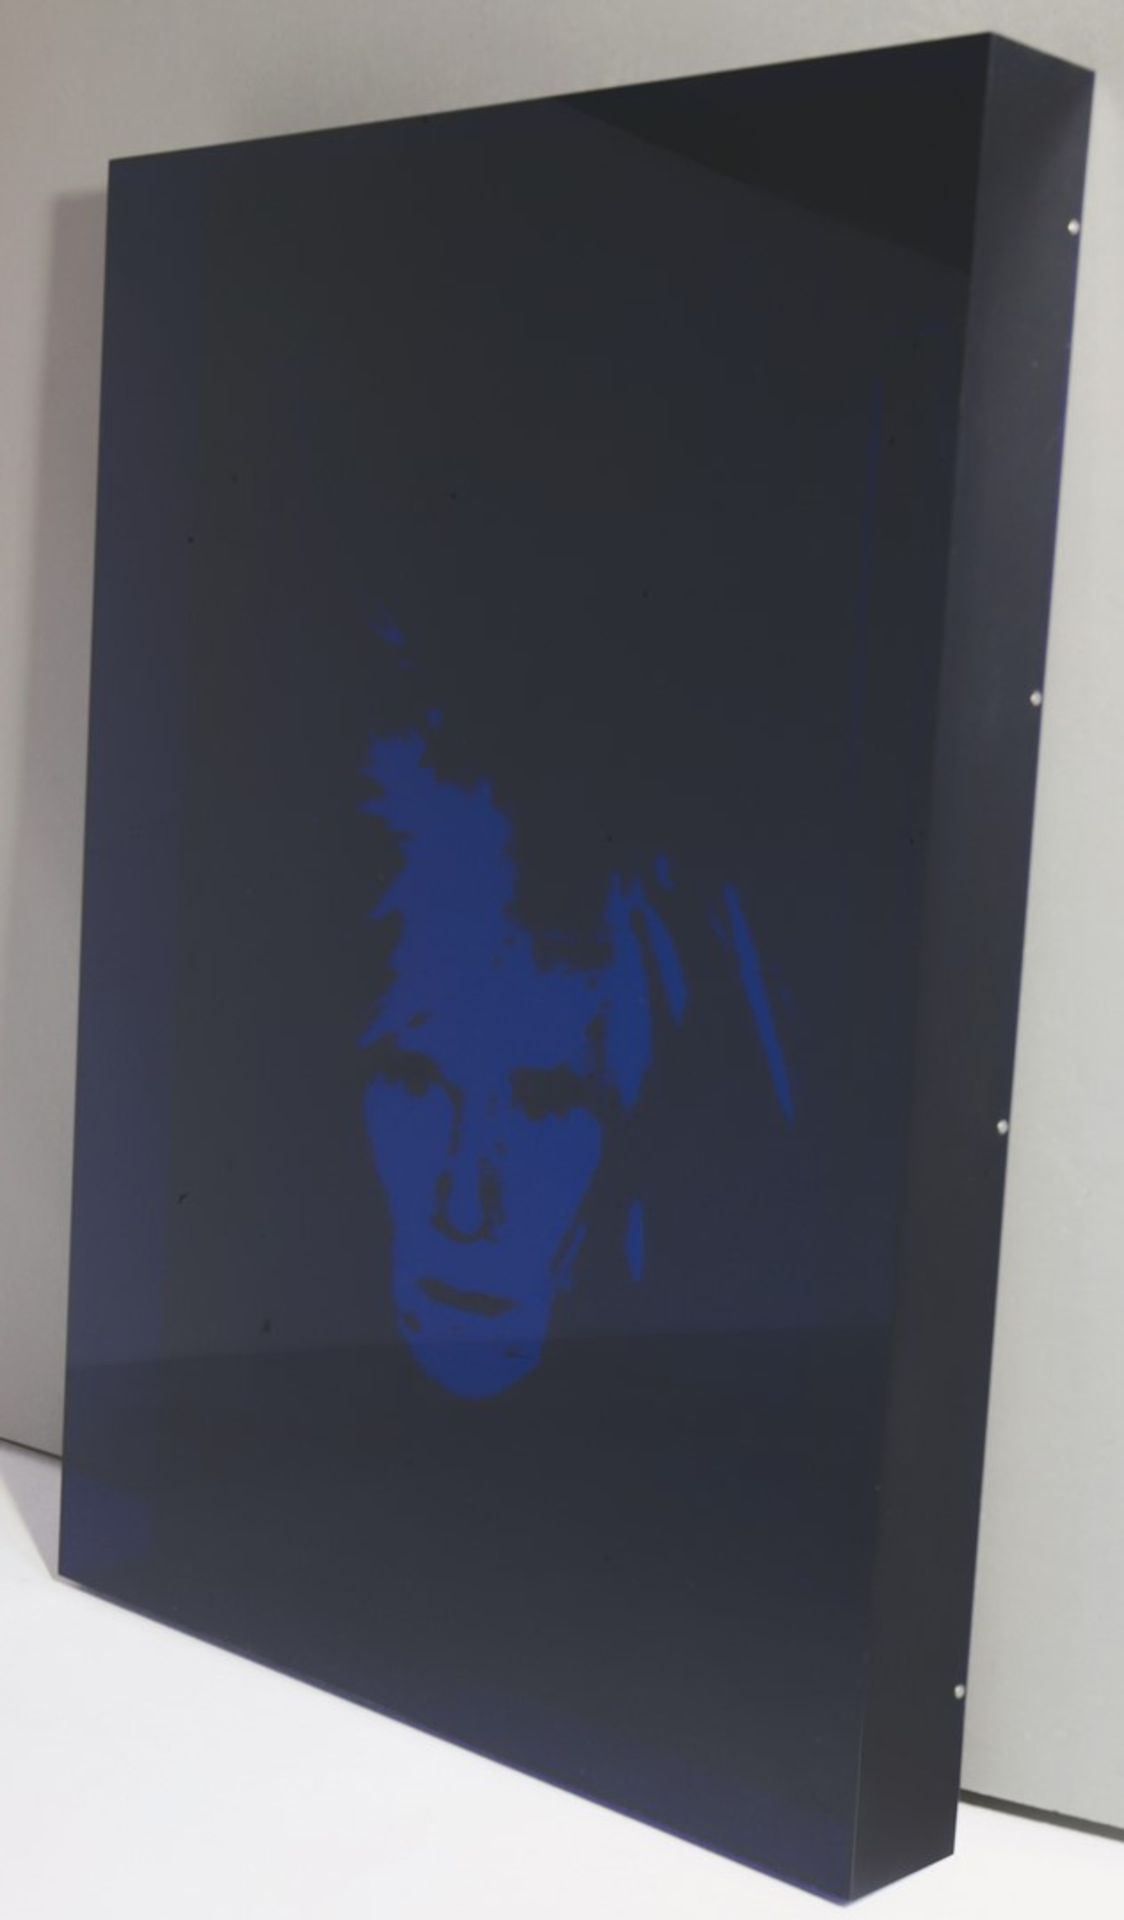 Portrait Warhol Foliendruck eines Portraits von Andy Warhol von 1986, auf Spiegel montiert. Ca. 60 x